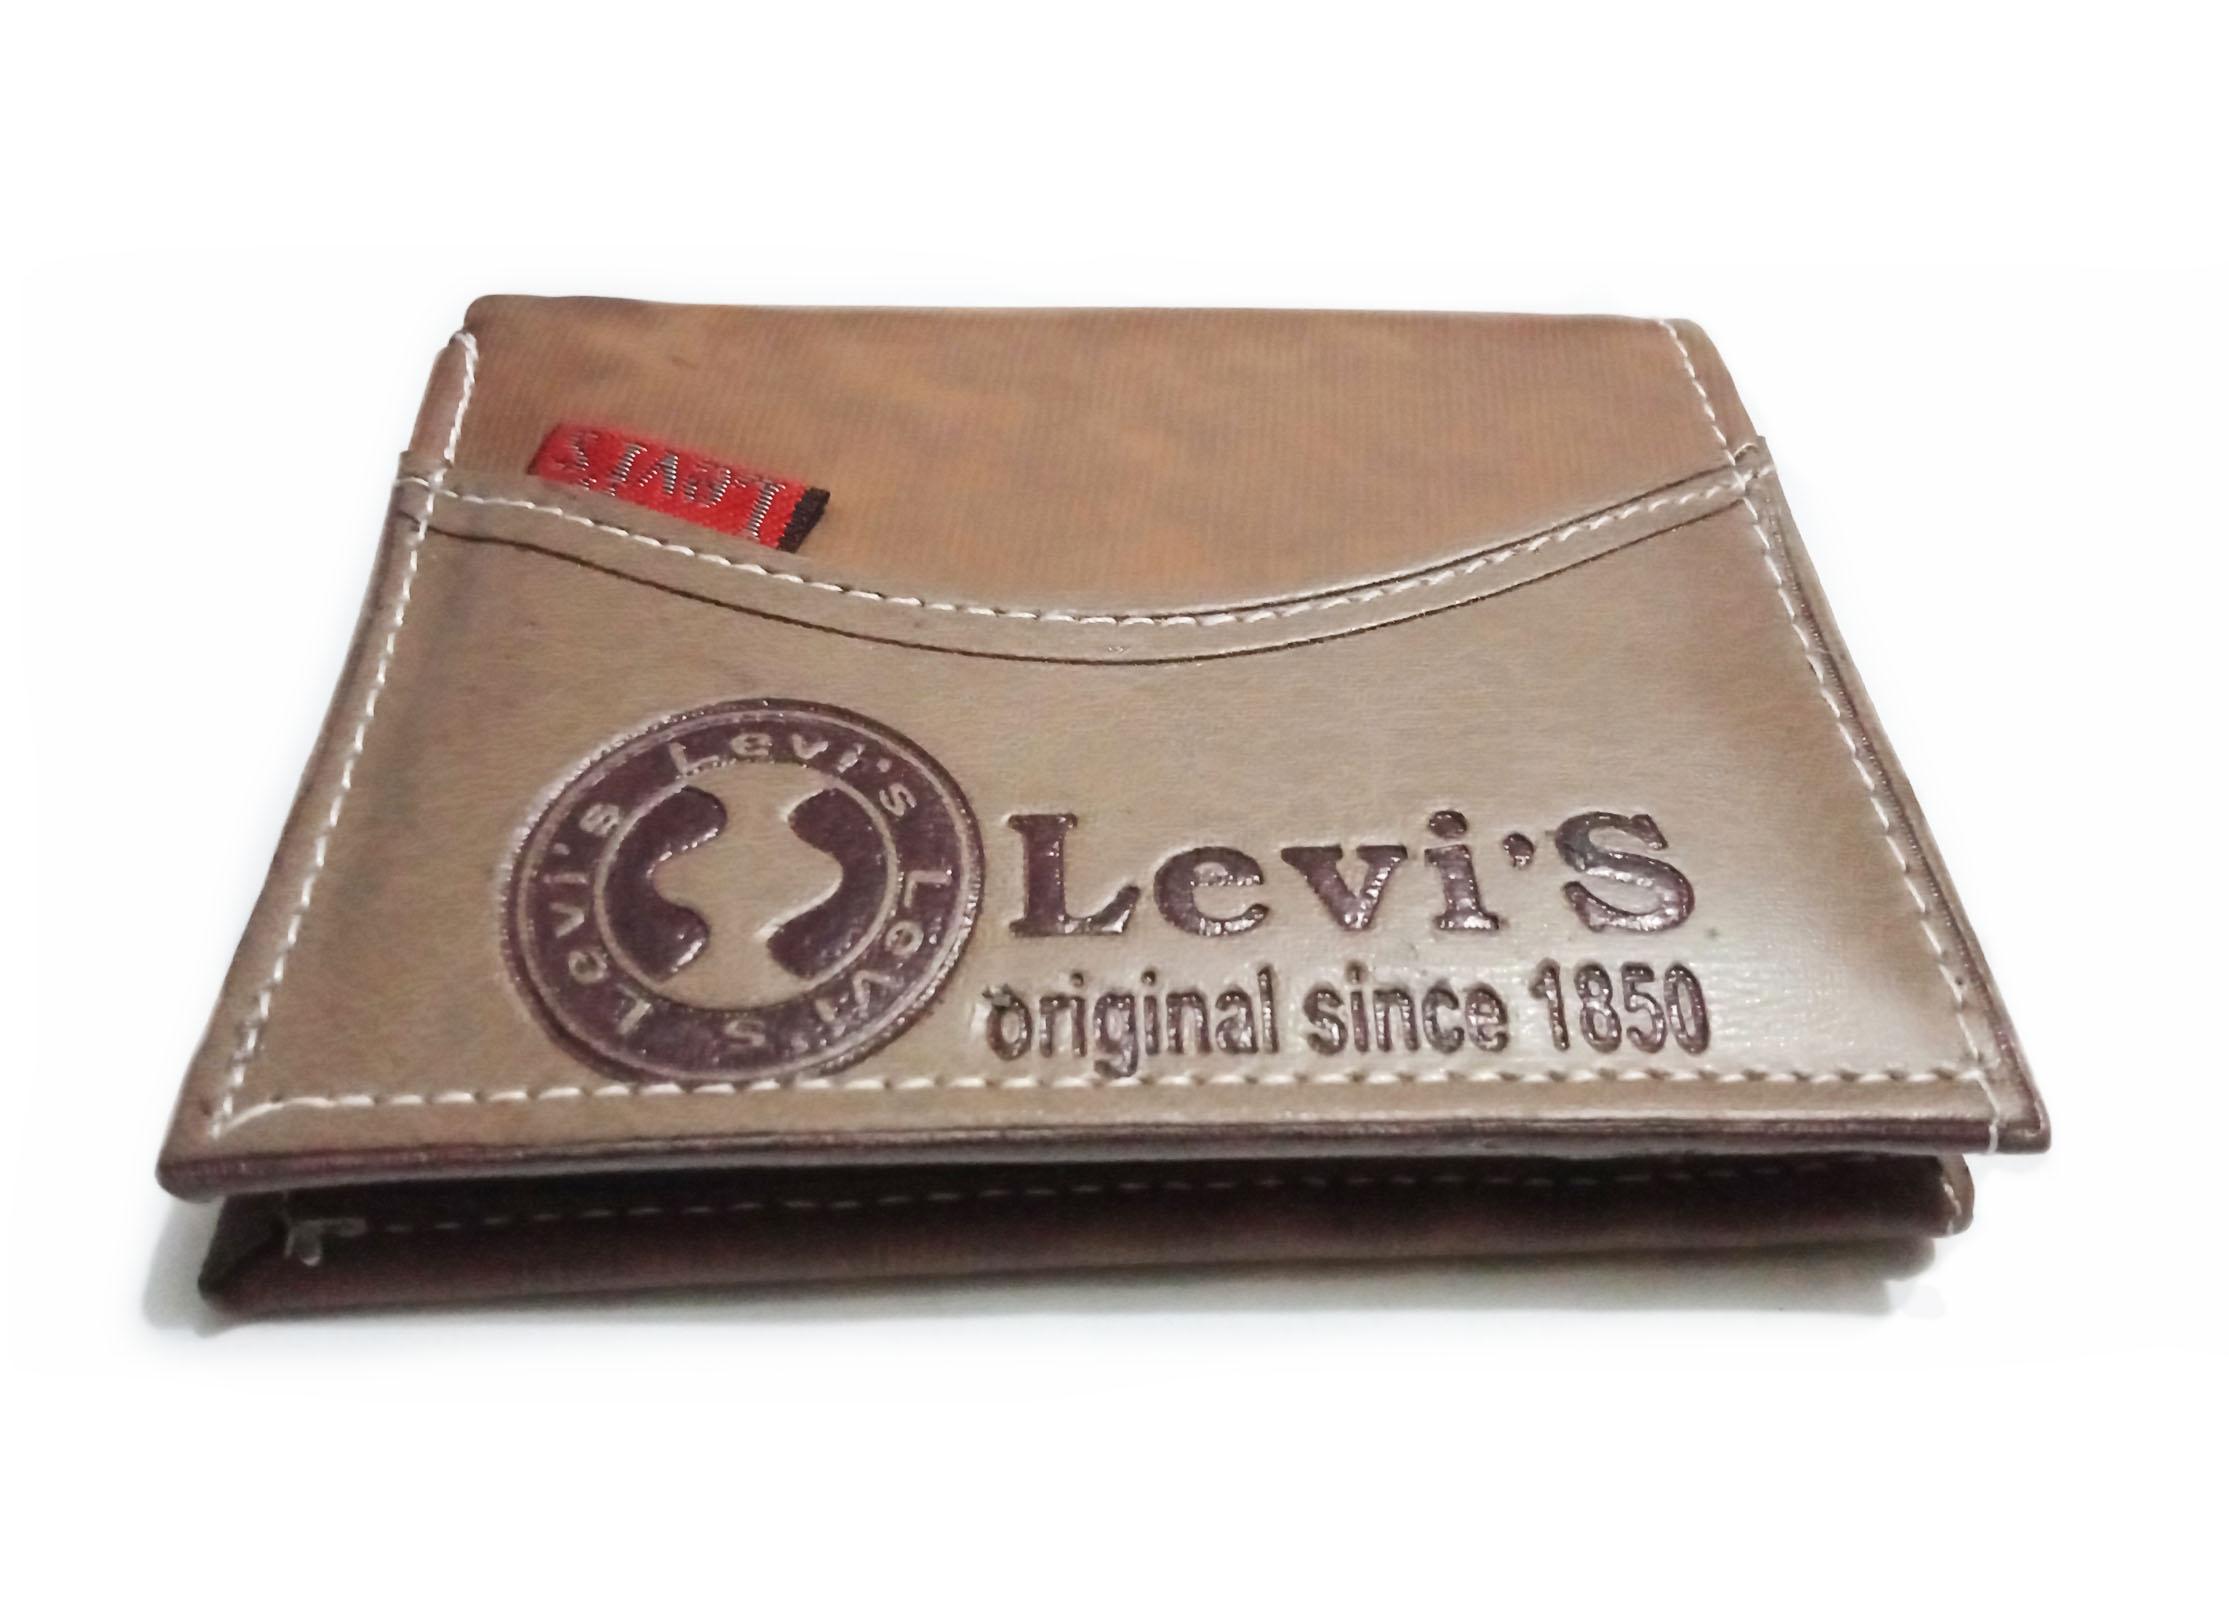 levis money bag